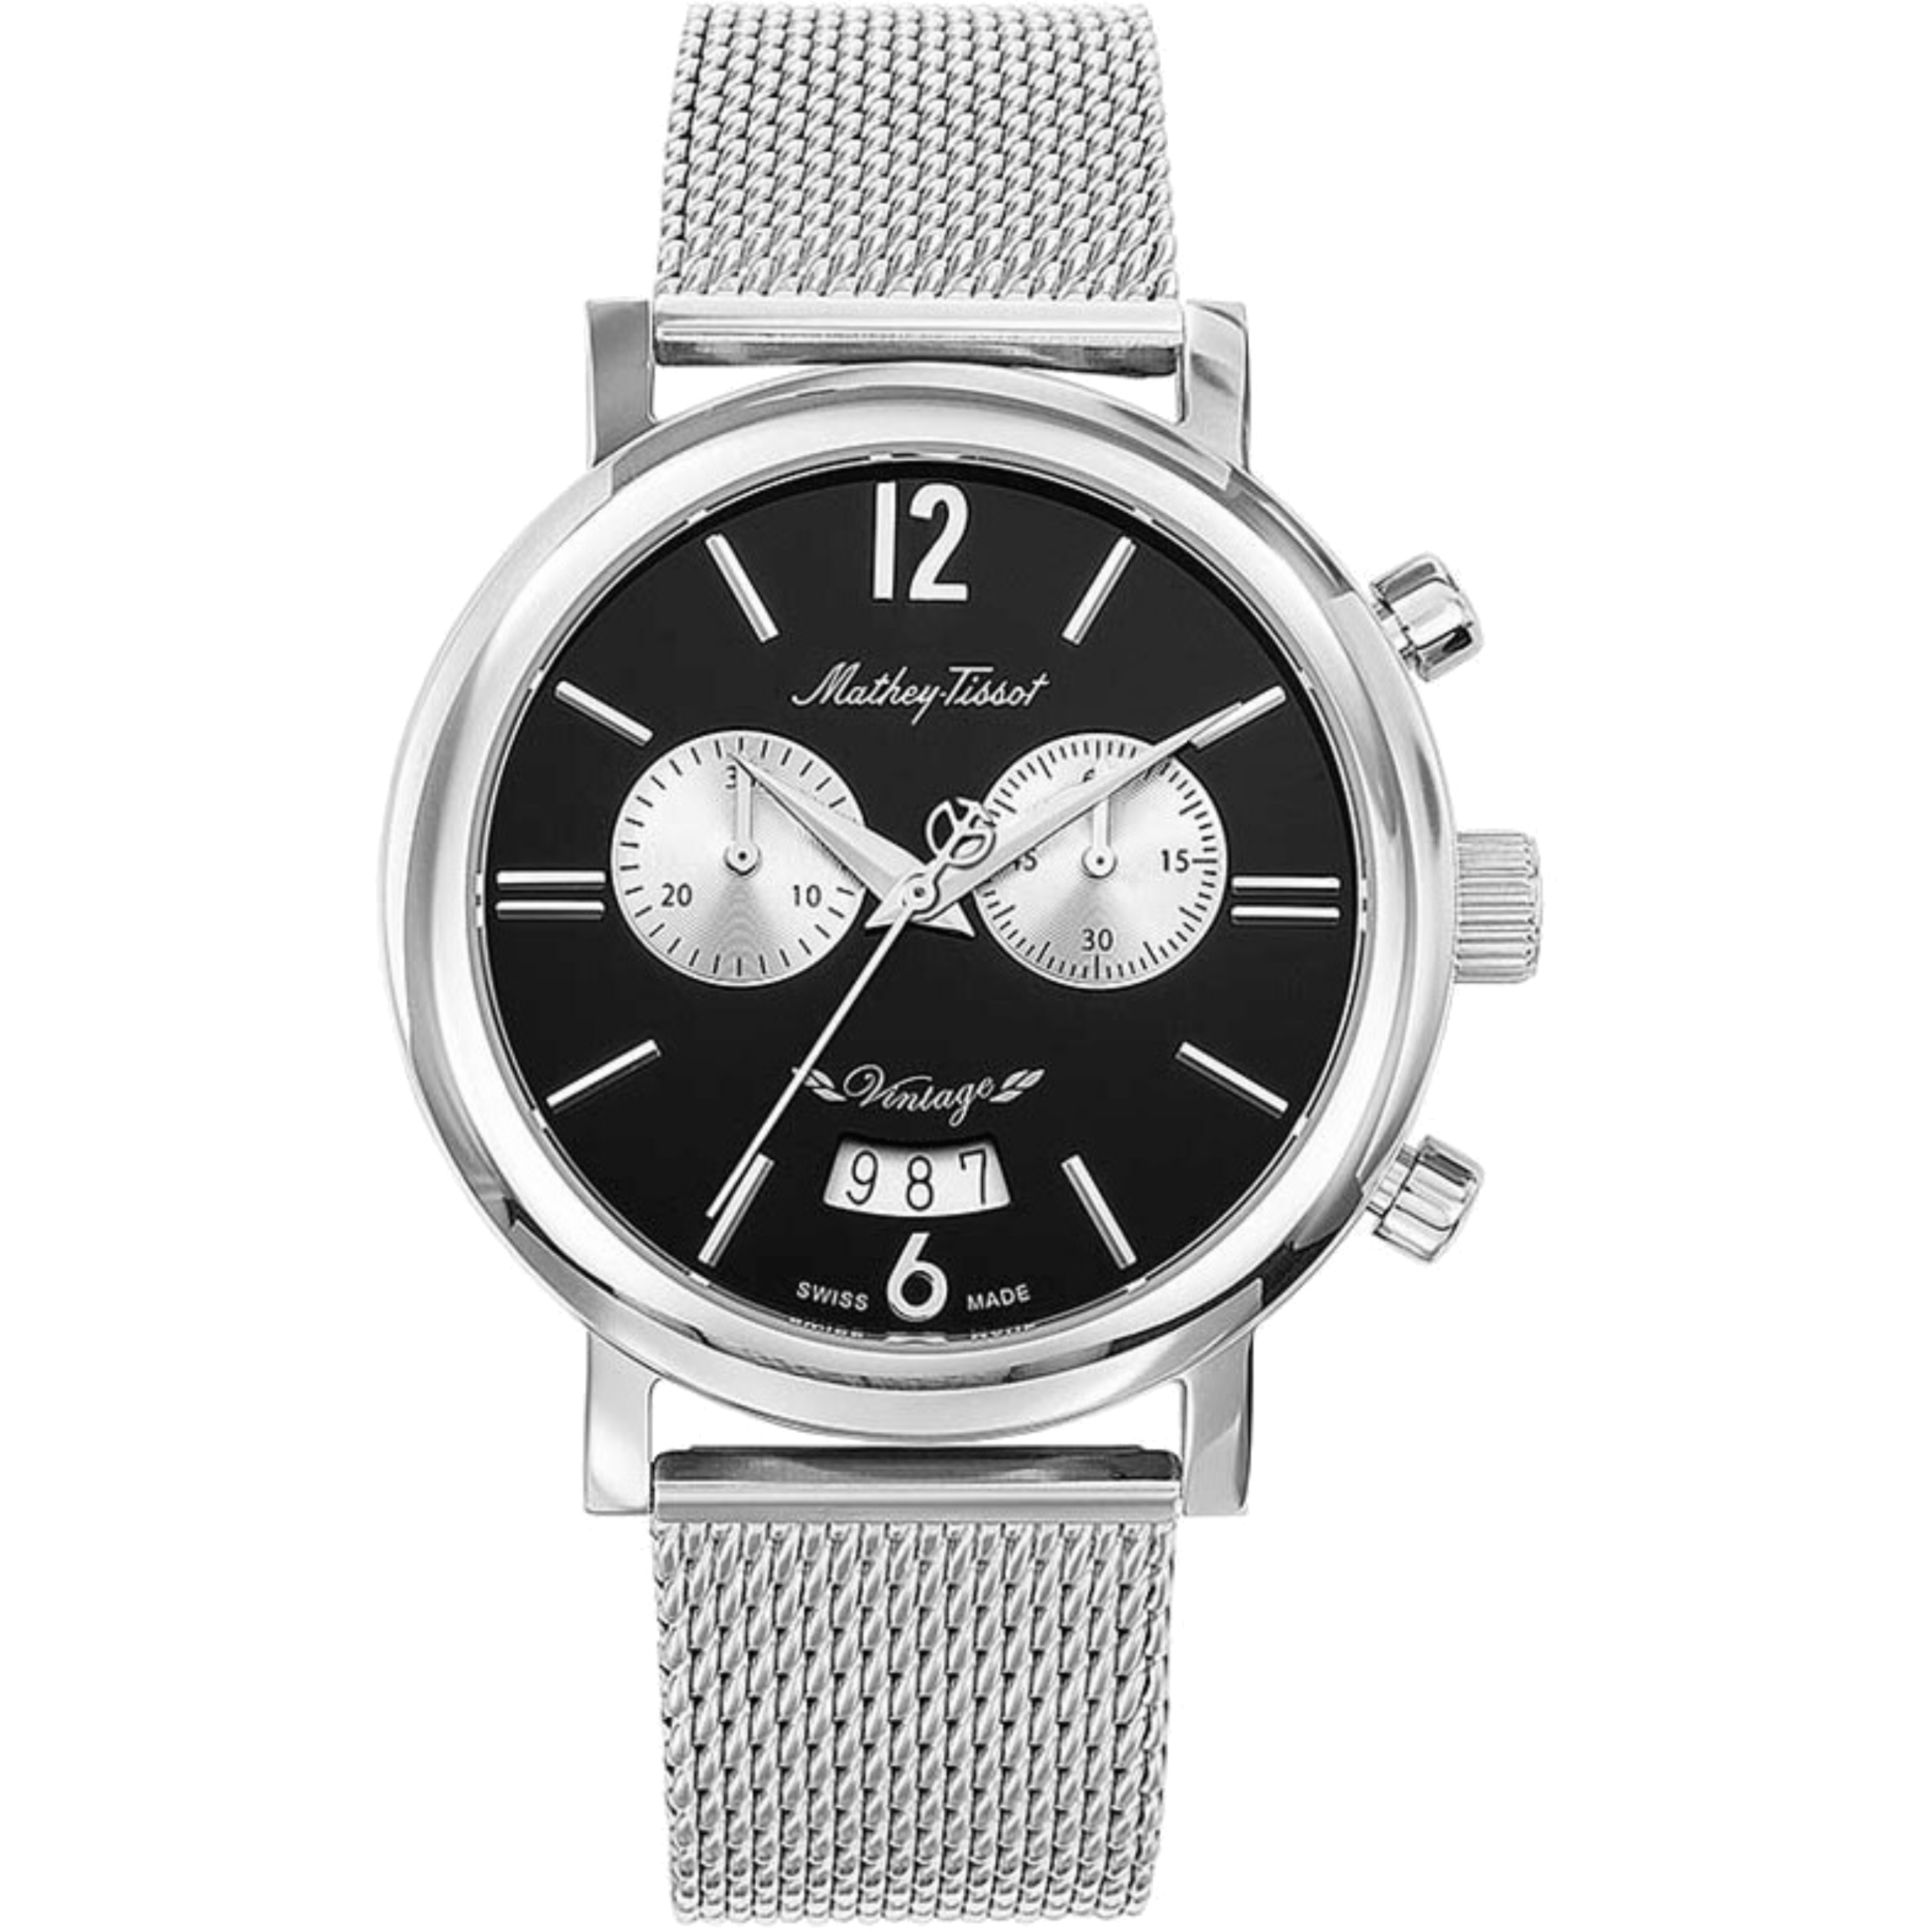 שעון יד לגבר Mathey Tissot H41CHMAN 41mm צבע כסף/שחור - אחריות לשנה ע"י היבואן